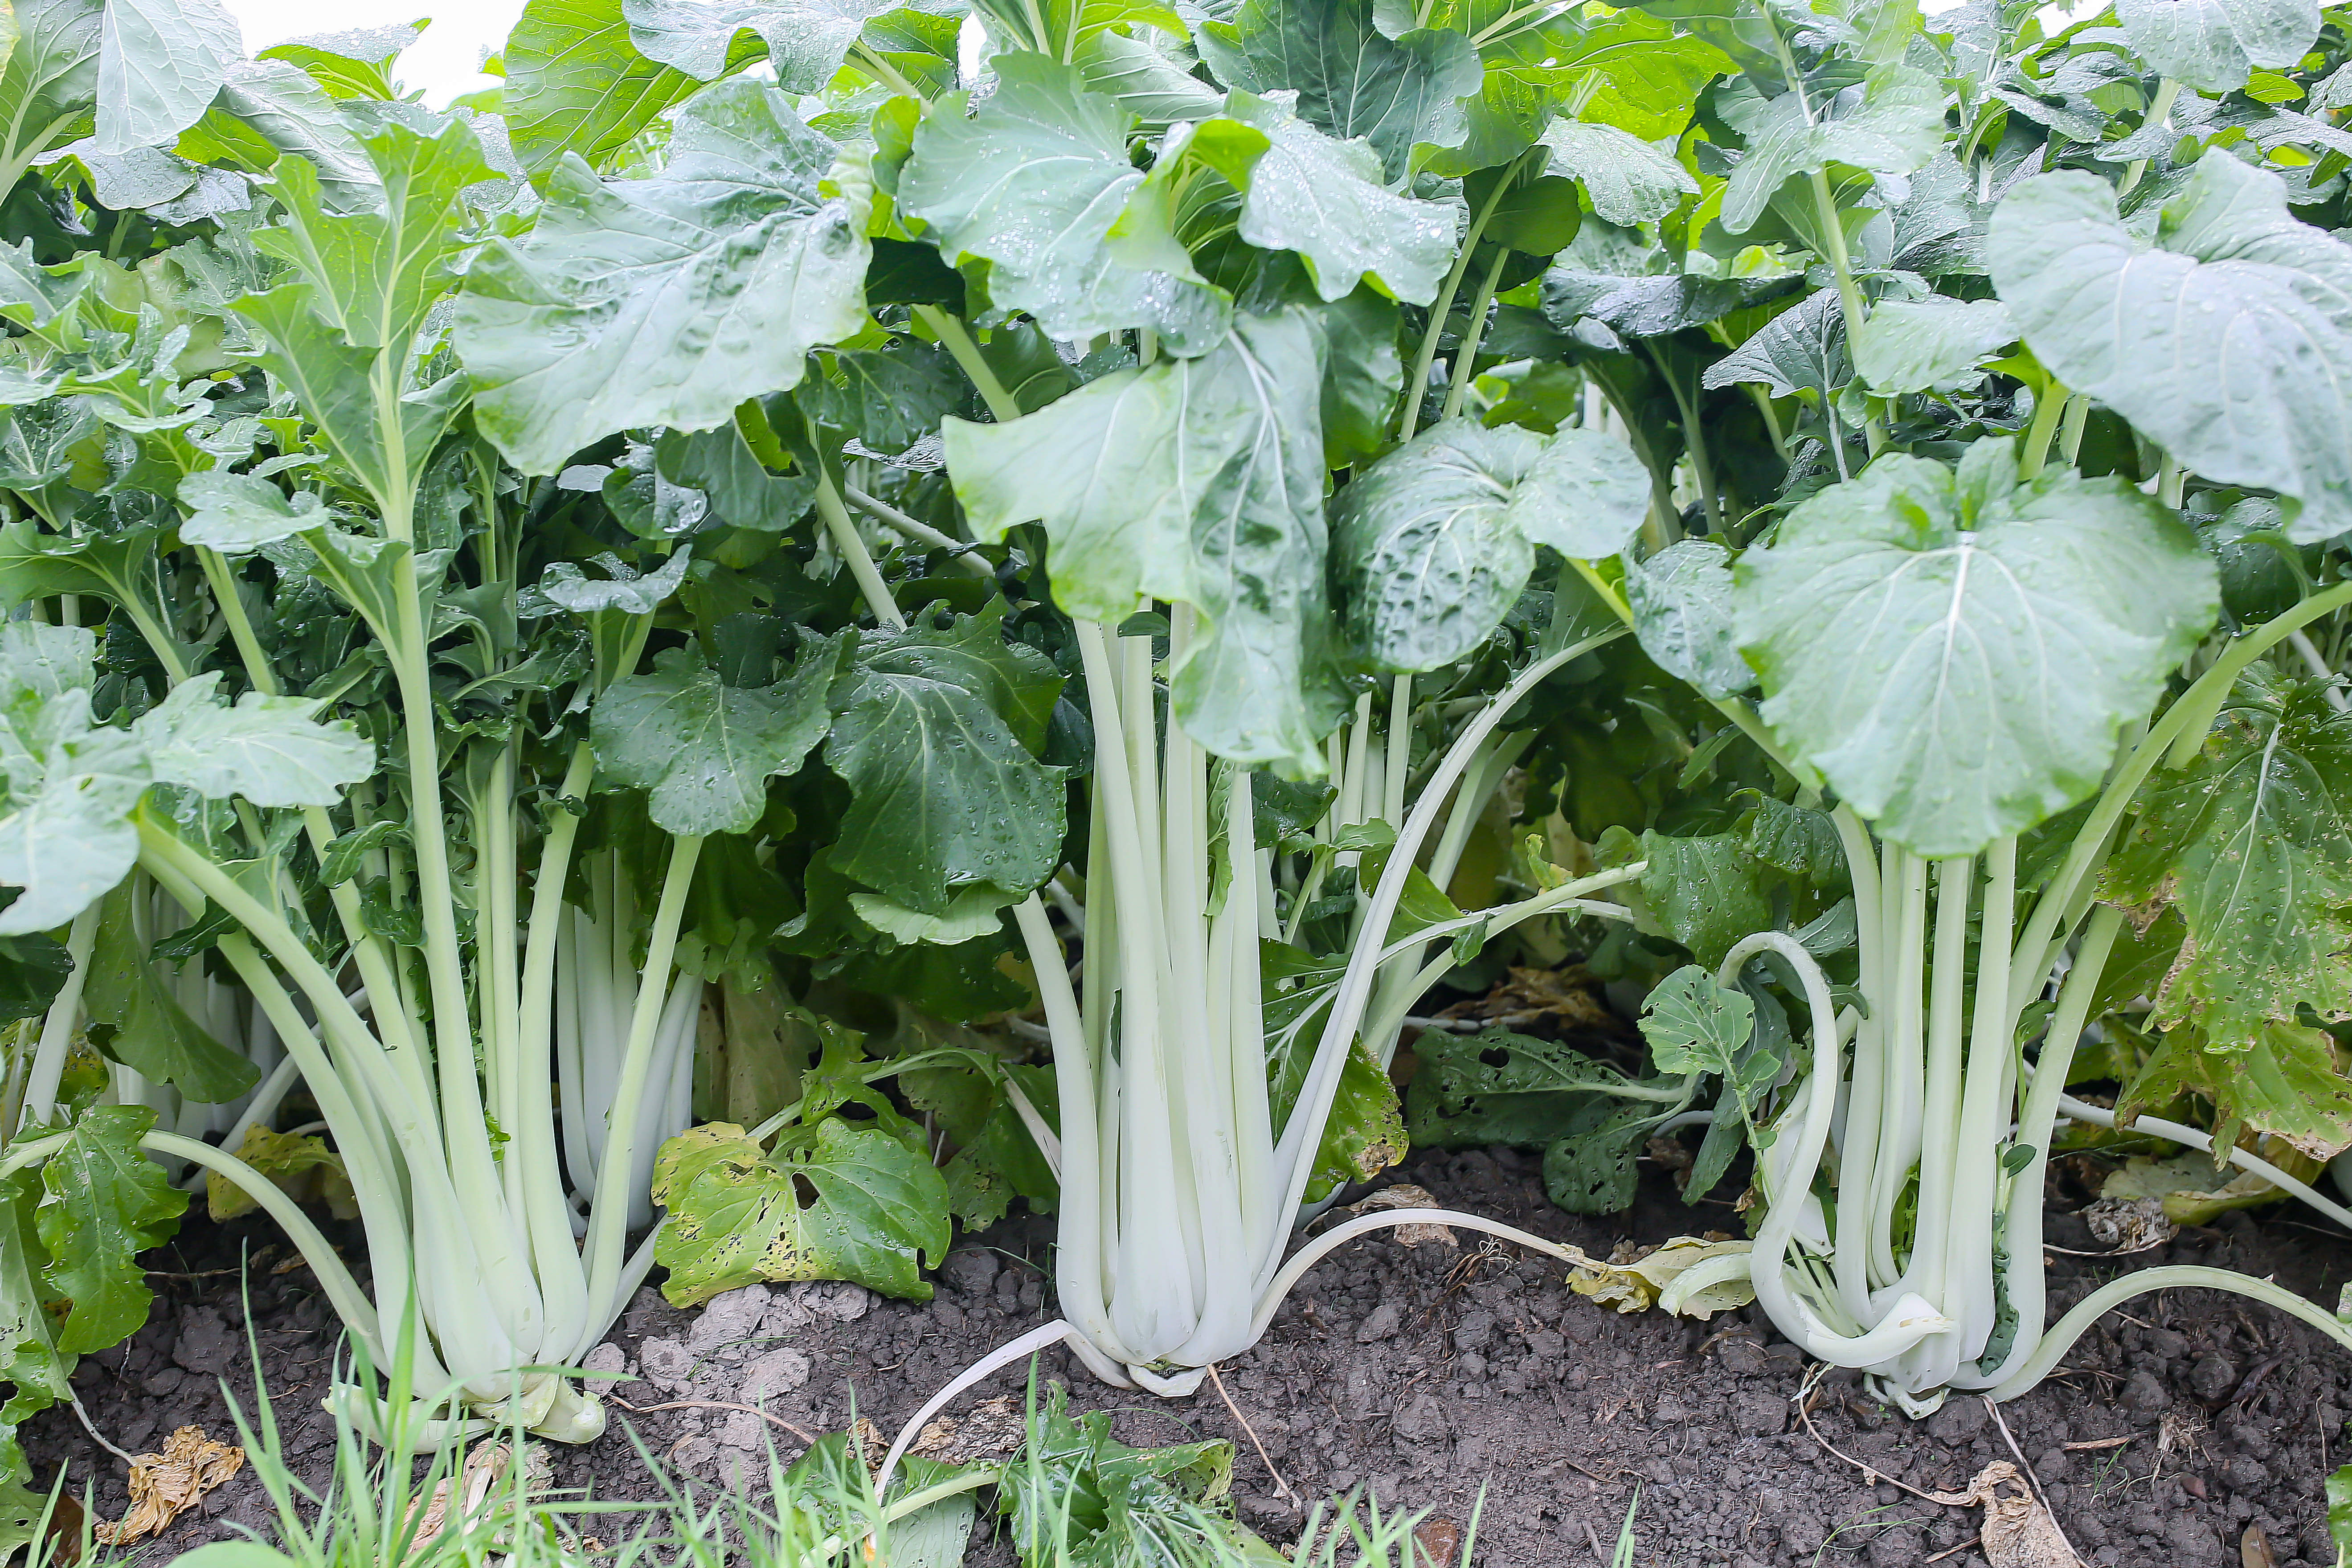 "厚大白"是厚大高脚白菜的俗称,因其原产地在汤溪镇厚大管理区一带